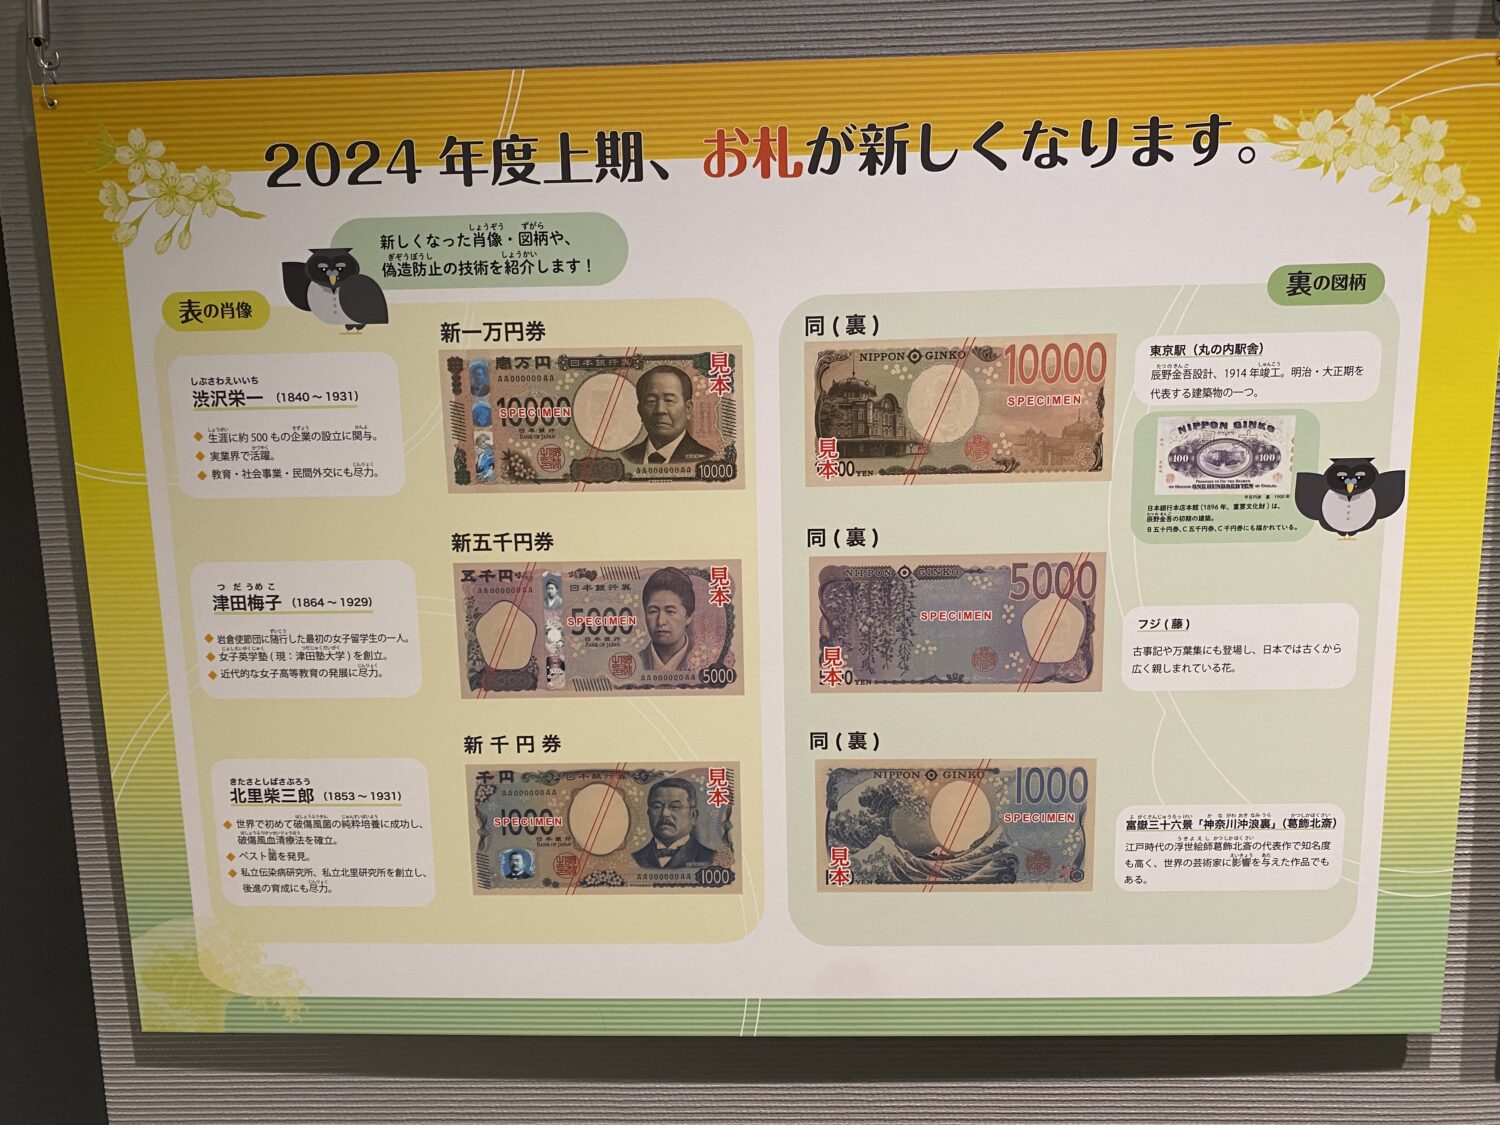 貨幣博物館で紹介されている新紙幣の偽造対策のポスターの写真